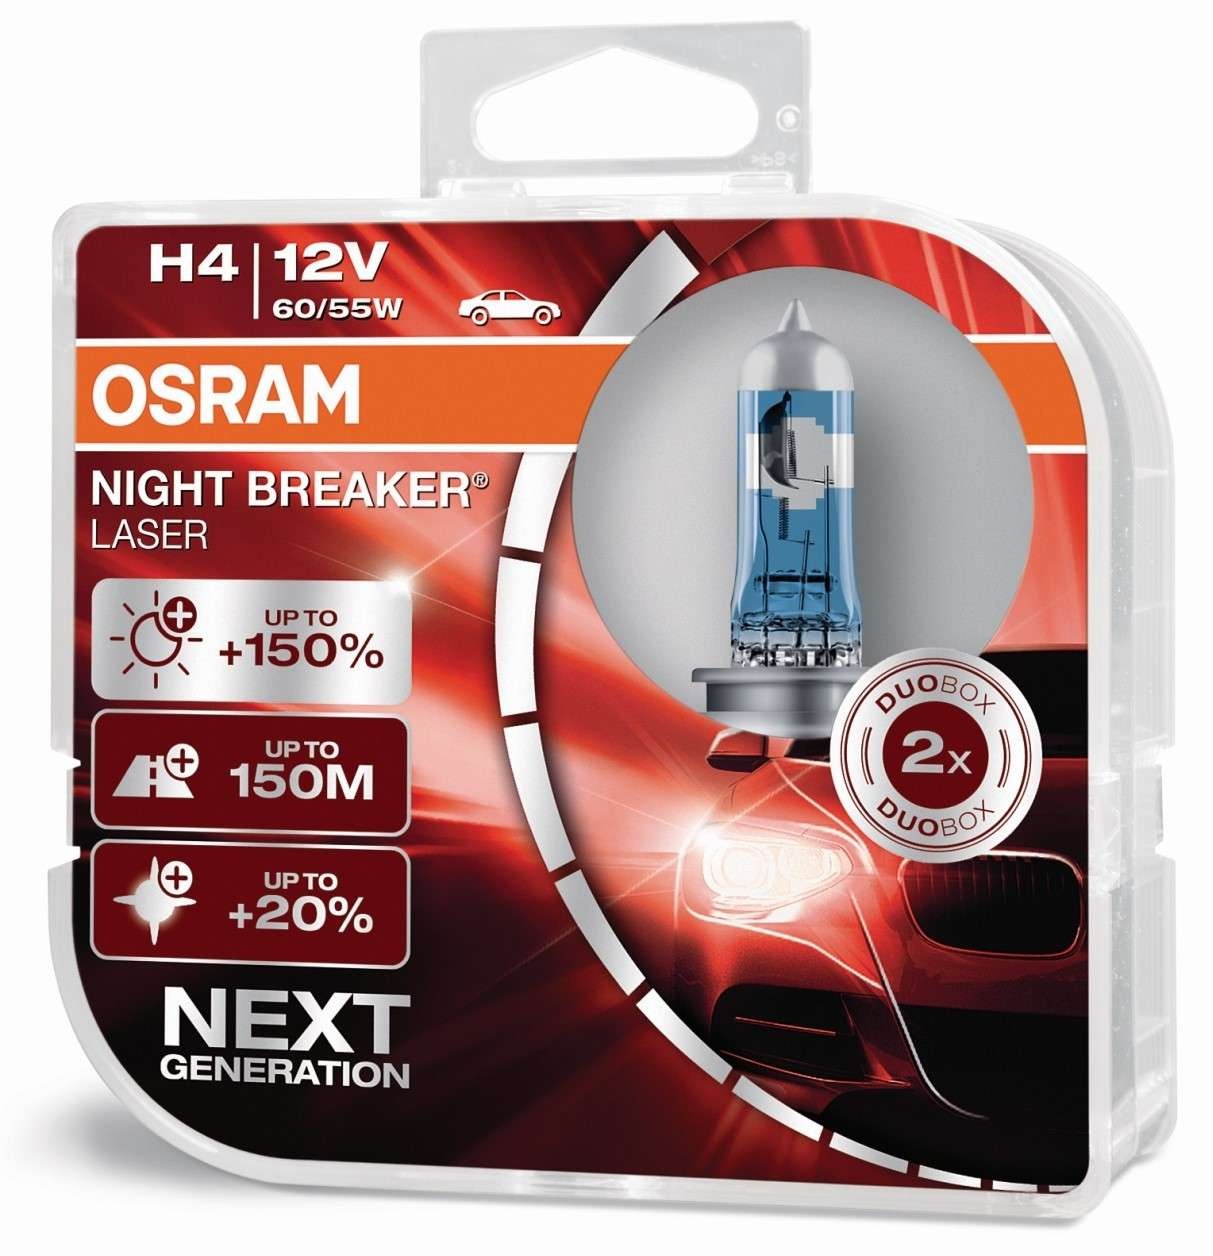 Osram H4 NIGHT BREAKER® LASER Next Generation 12V